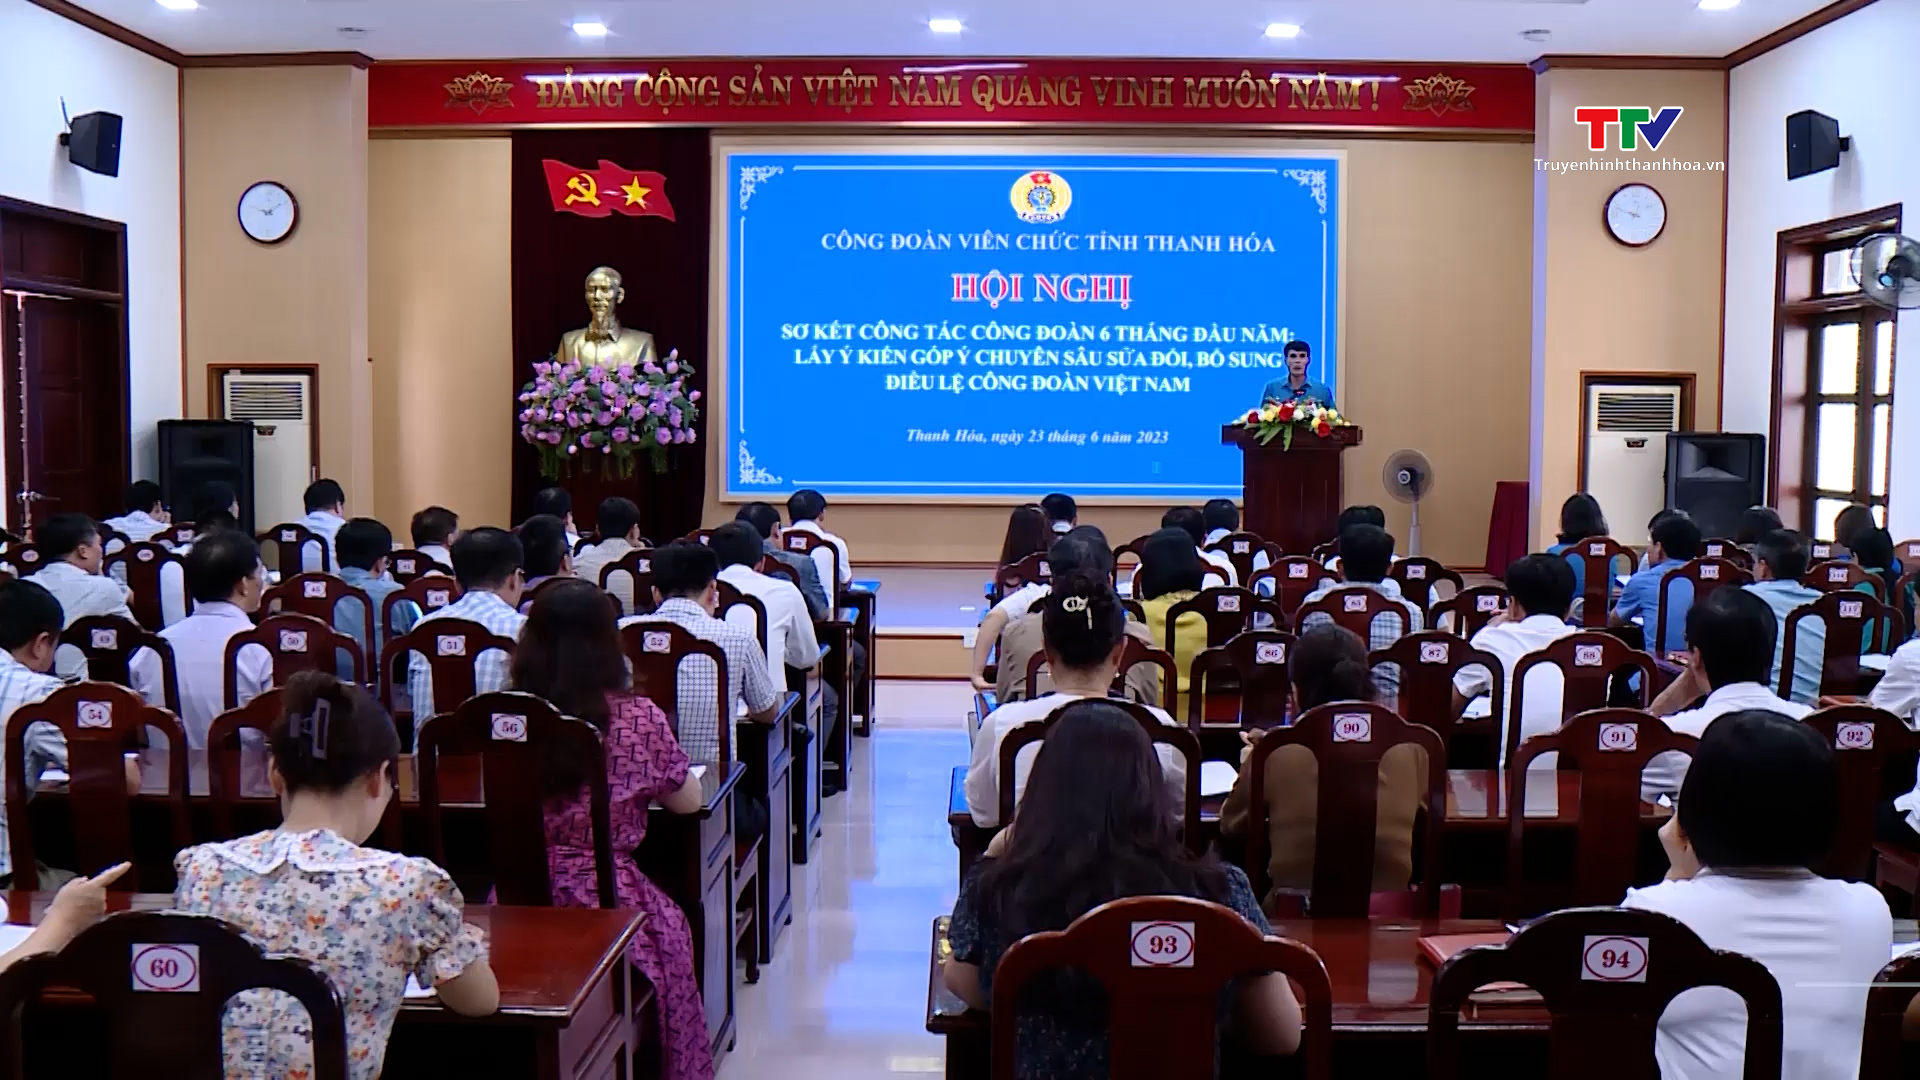 Công đoàn viên chức tỉnh Thanh Hóa sơ kết công tác 6 tháng đầu năm - Ảnh 2.